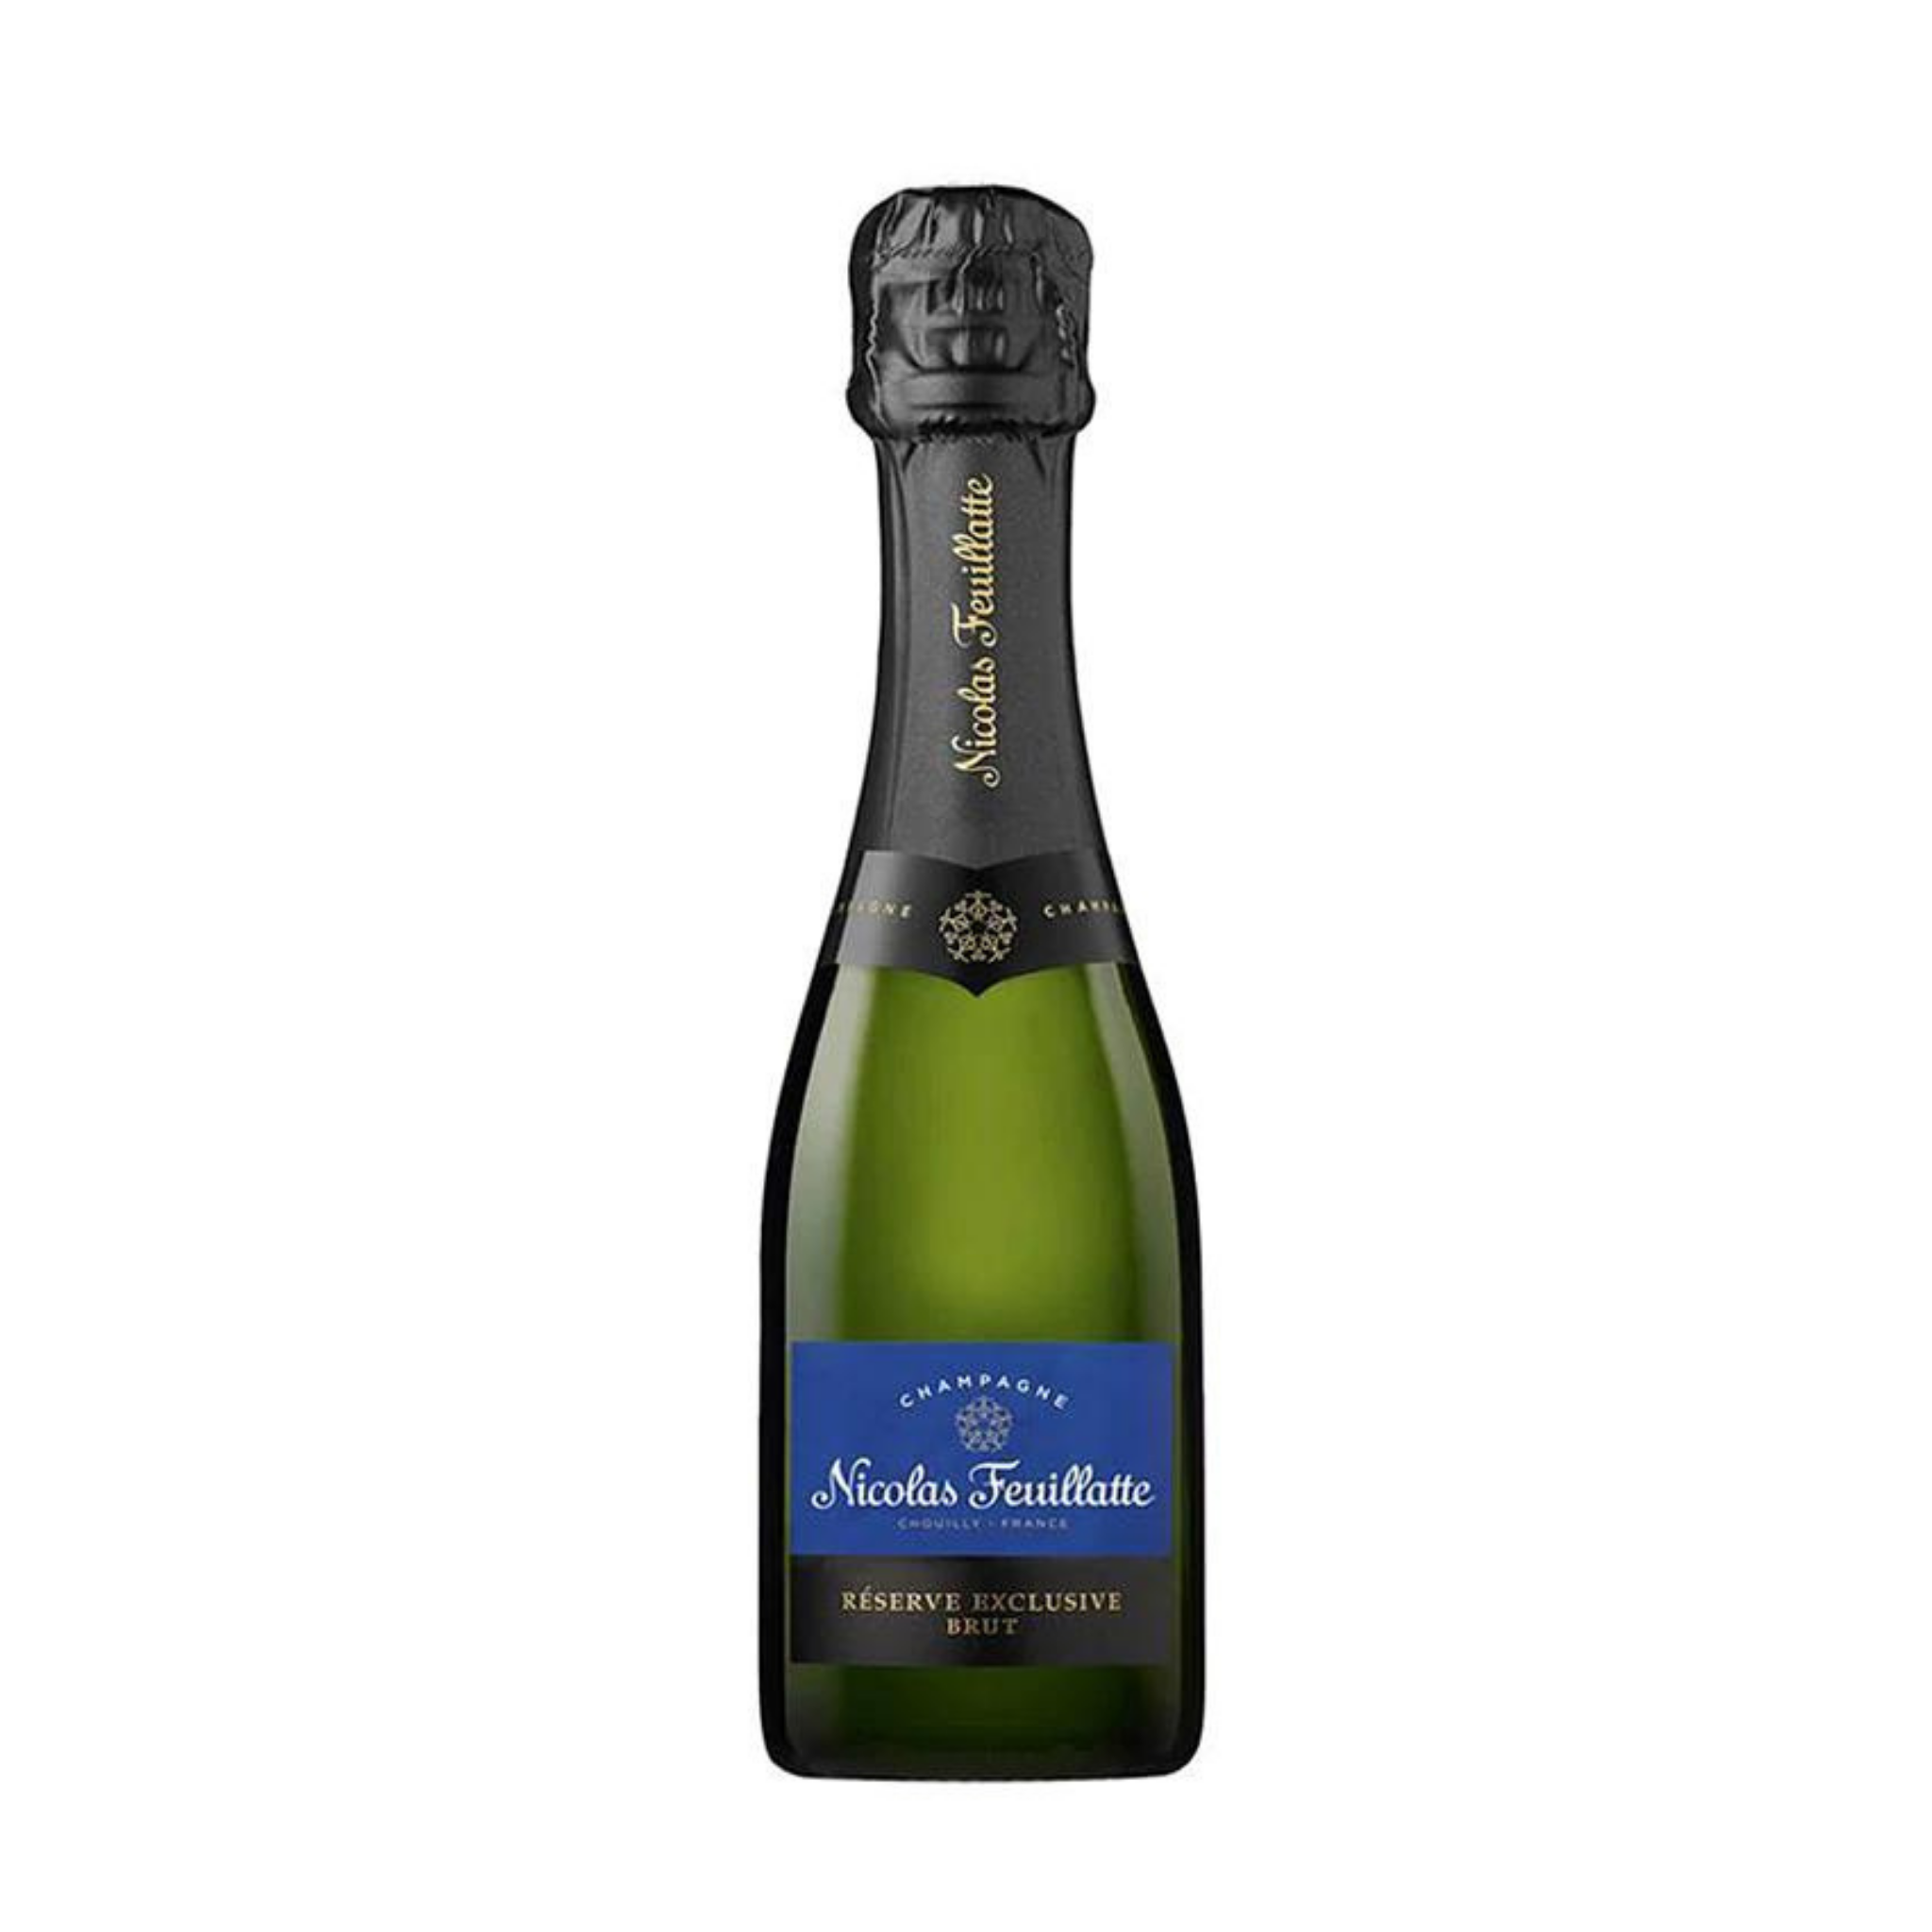 Cellar Mini Feuillatte Reserve Exclusive Grand Champagne – Brut Nicolas Wine